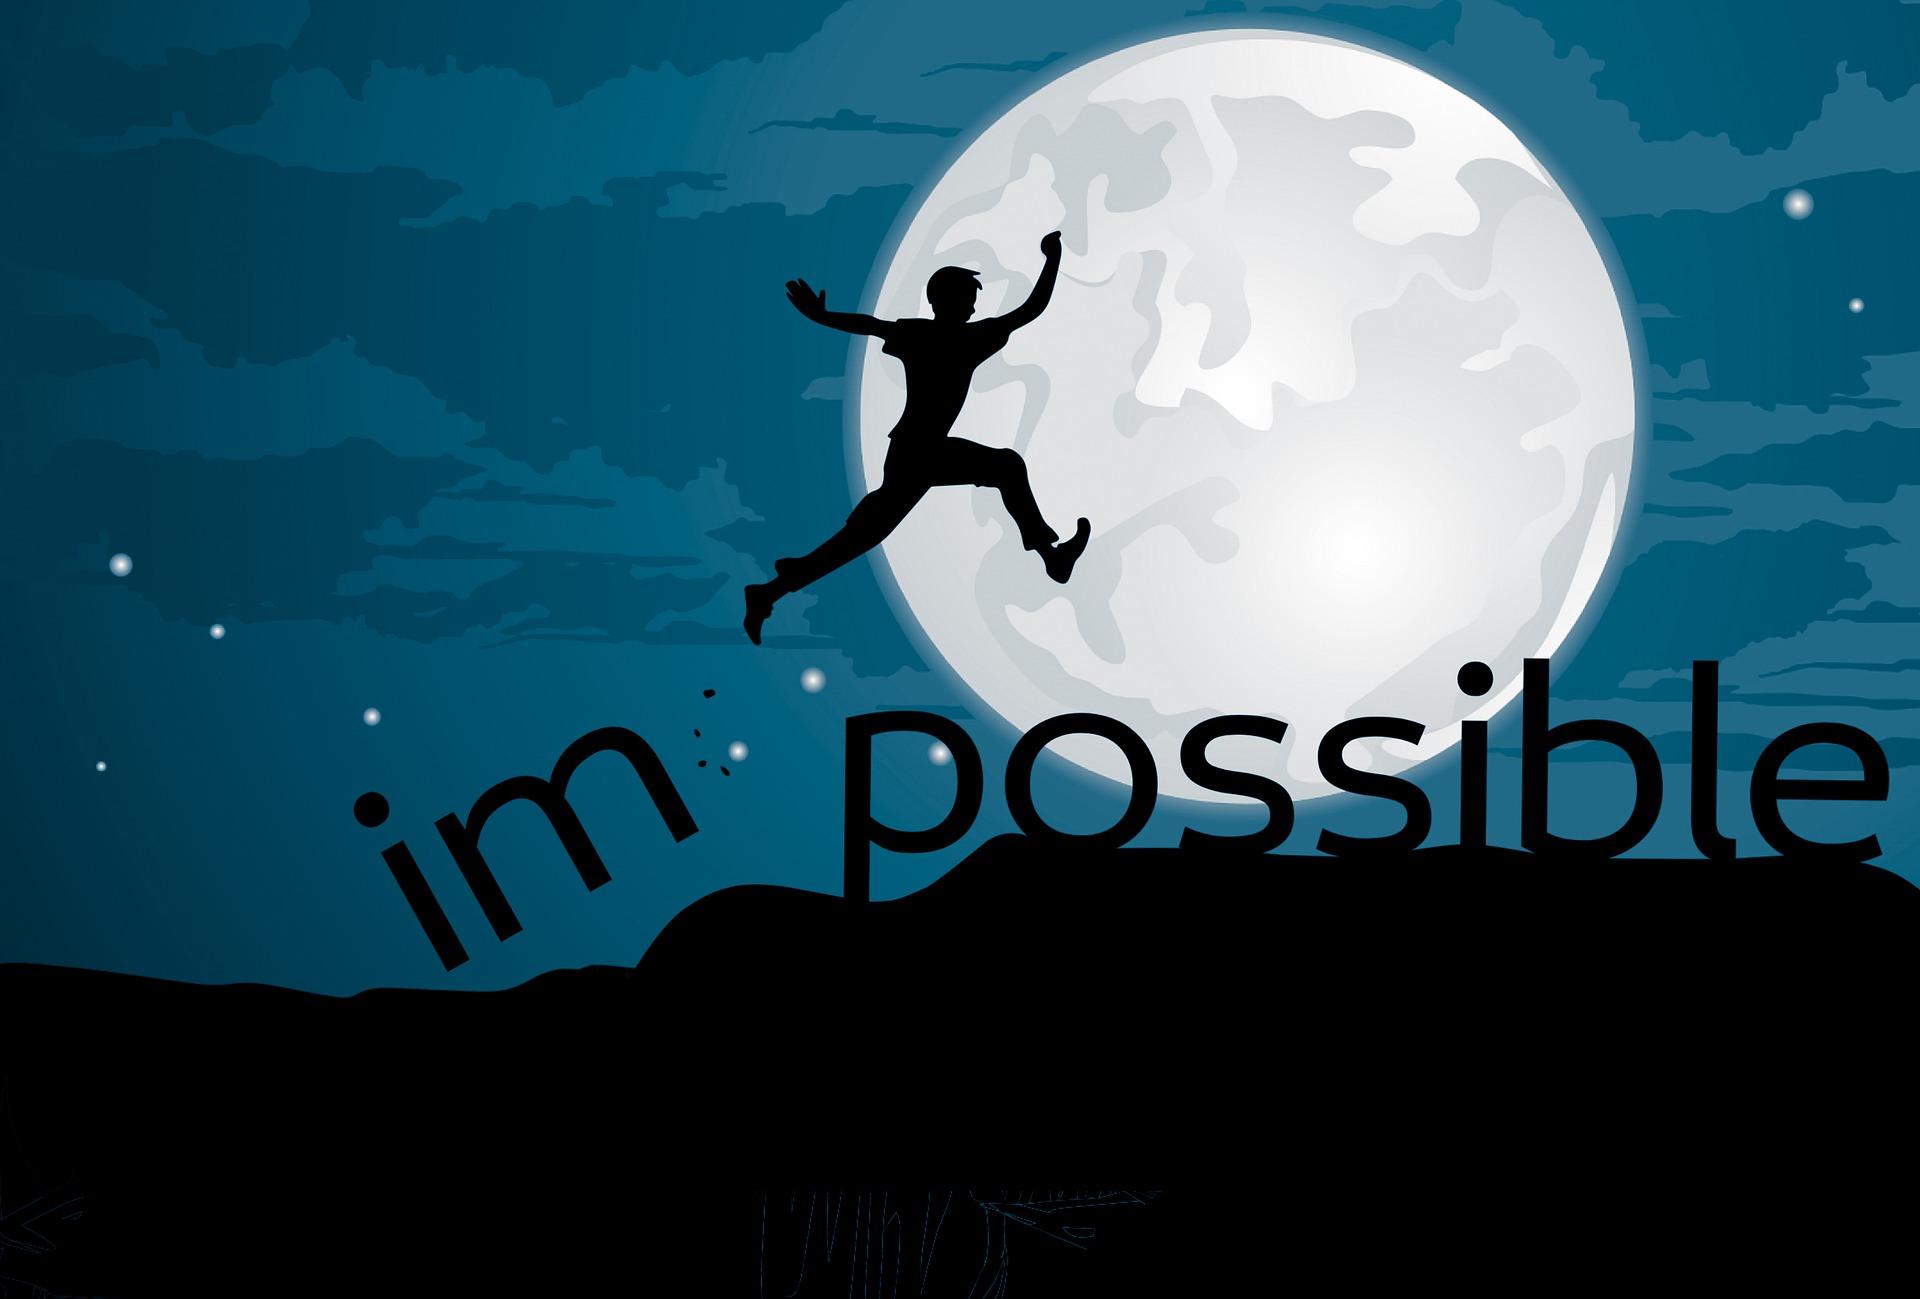 Illustration einer Person die freudig in die Luft springt und dabei das Wort "impossible" zerstört, sodass nur "possible" zurückbleibt